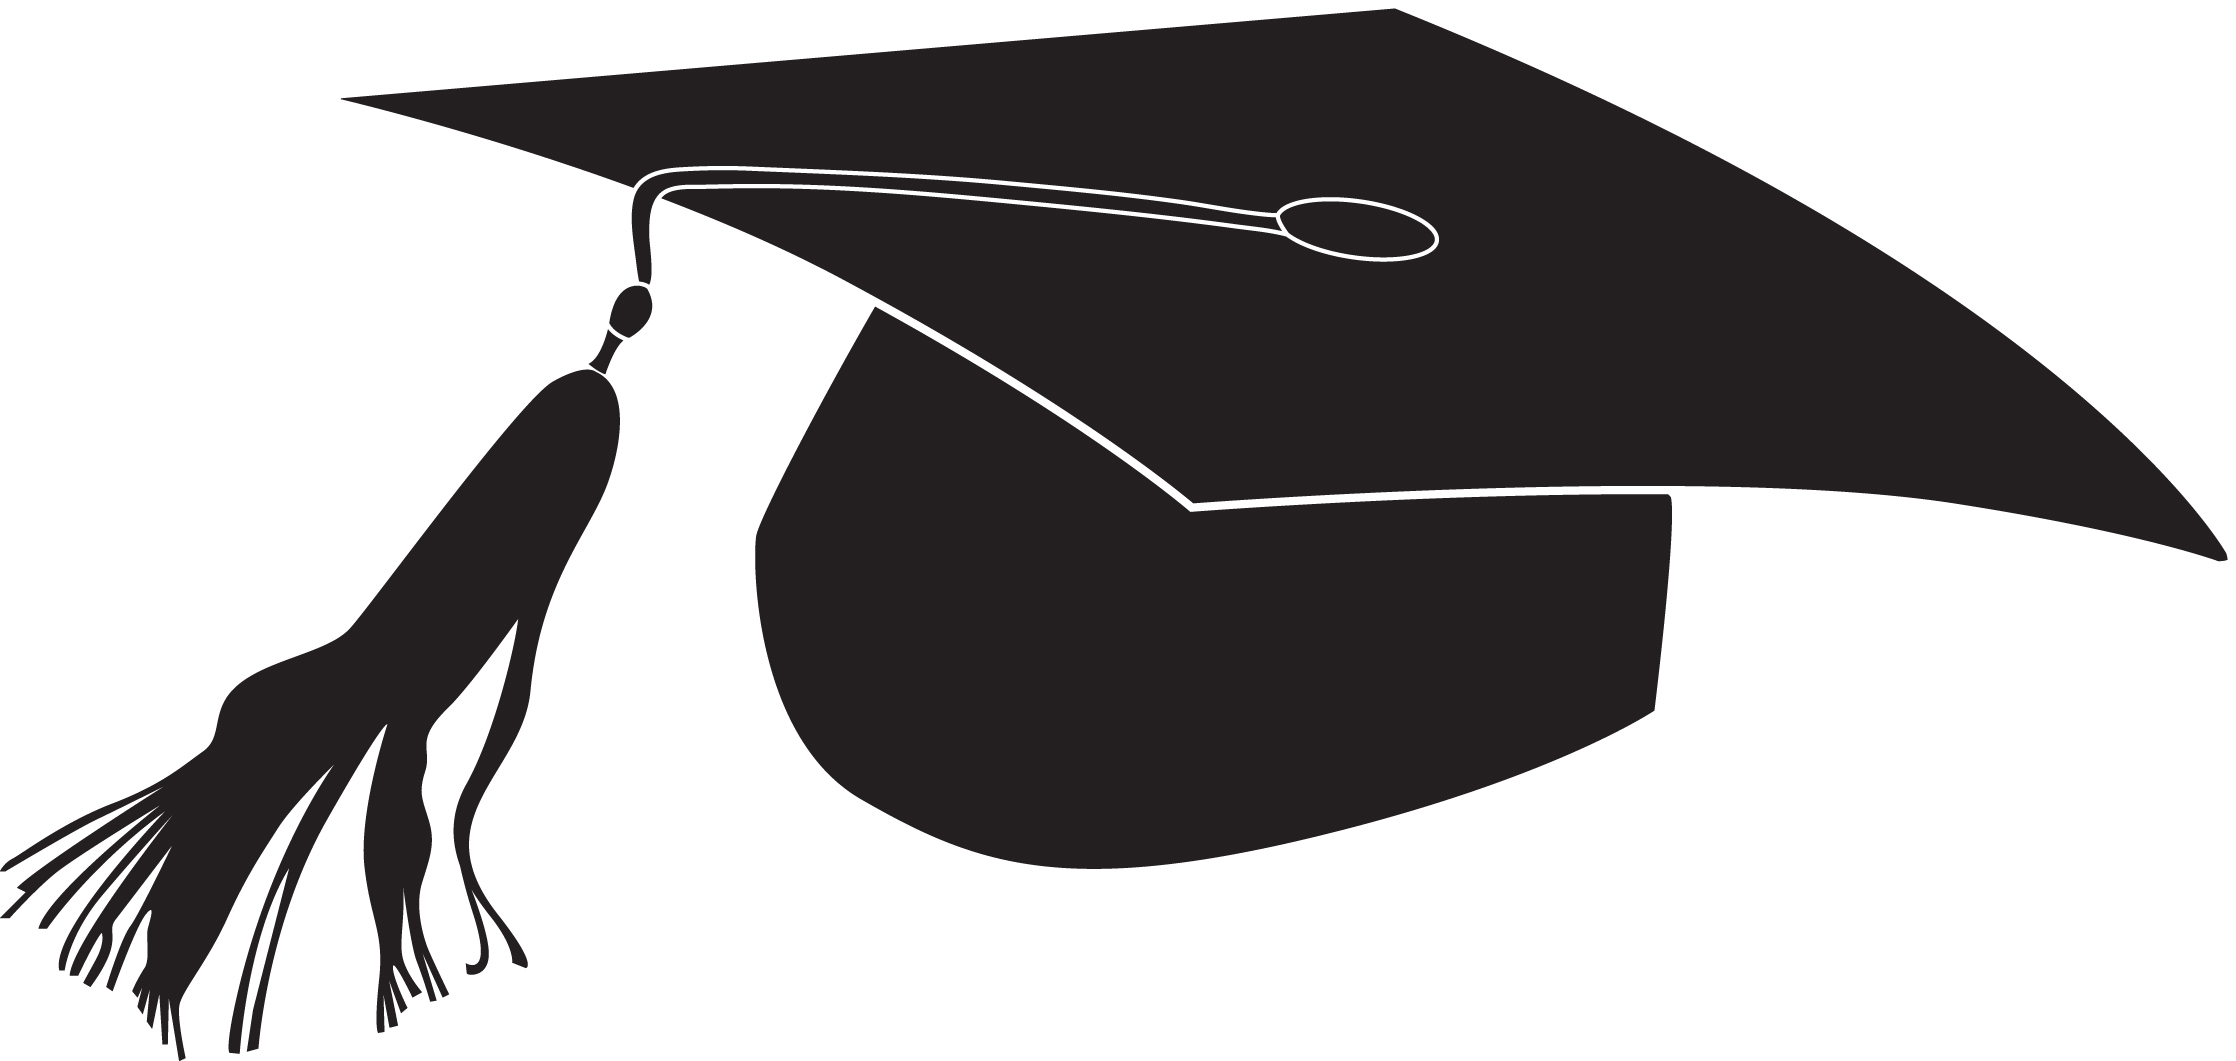 free clip art of a graduation cap - photo #27